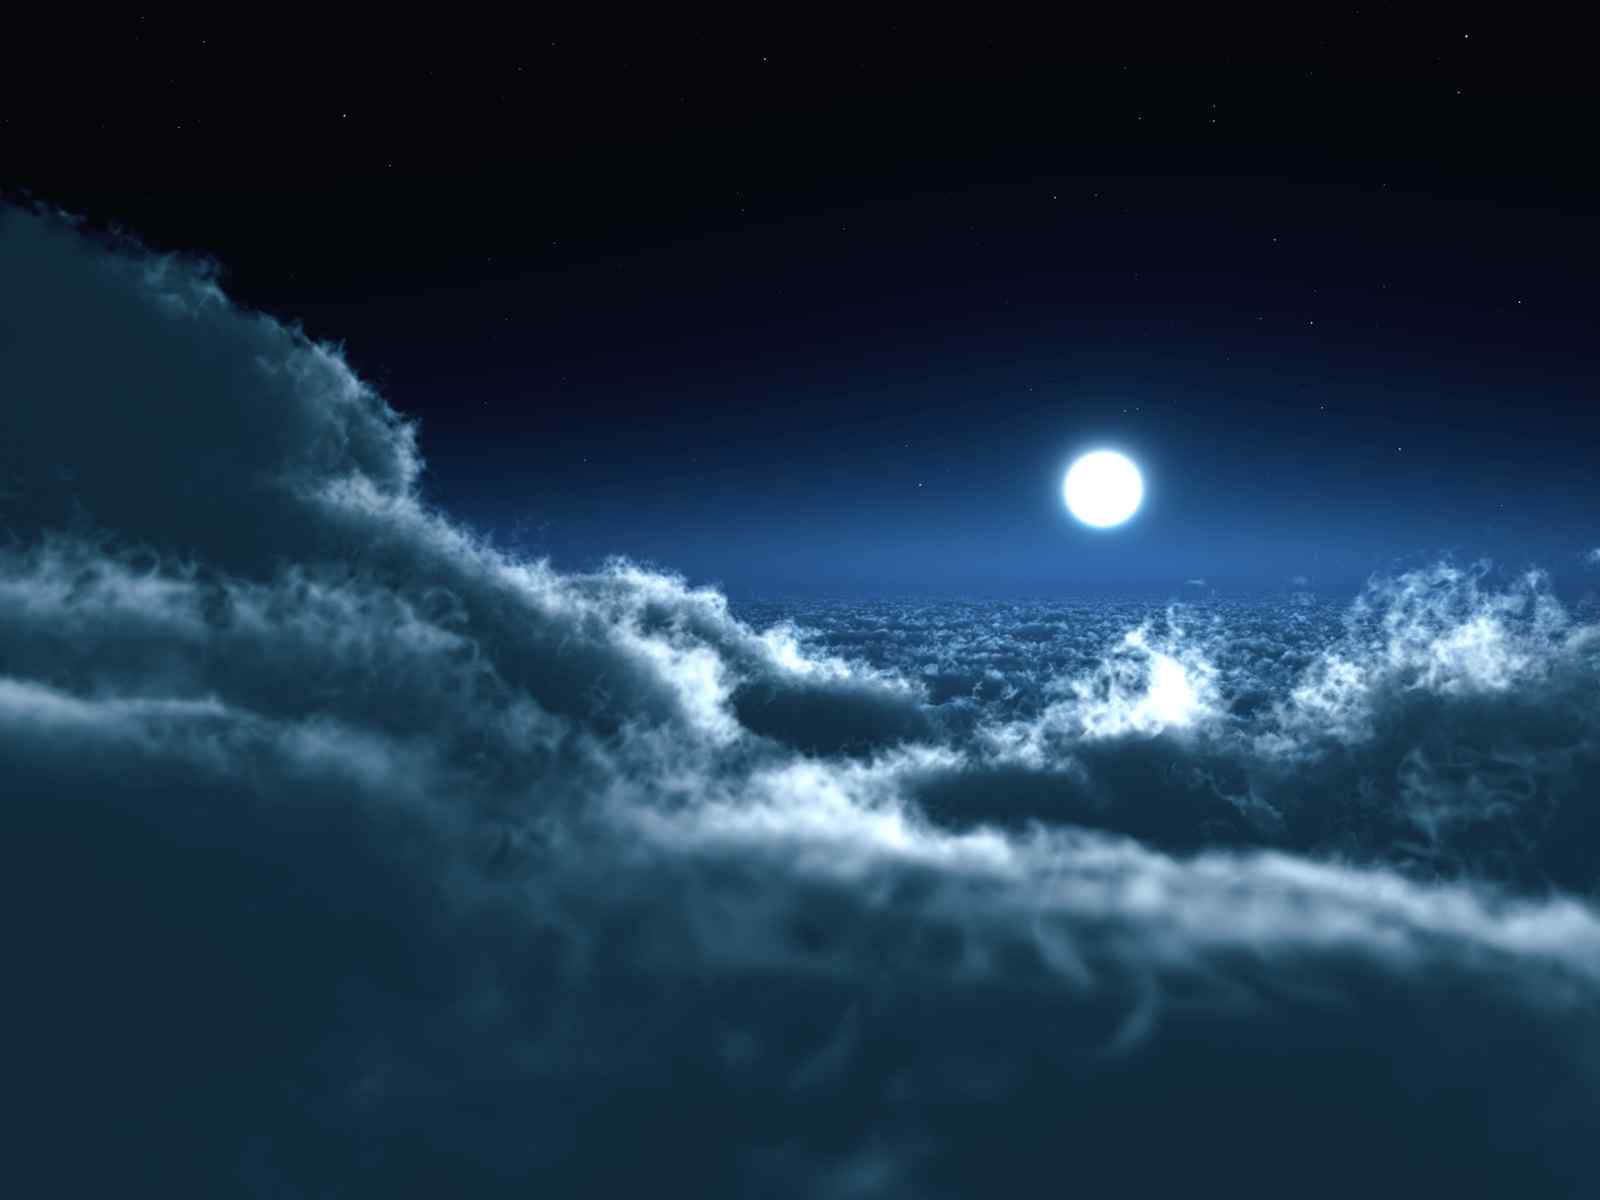 唯美云层上的明月图片桌面壁纸